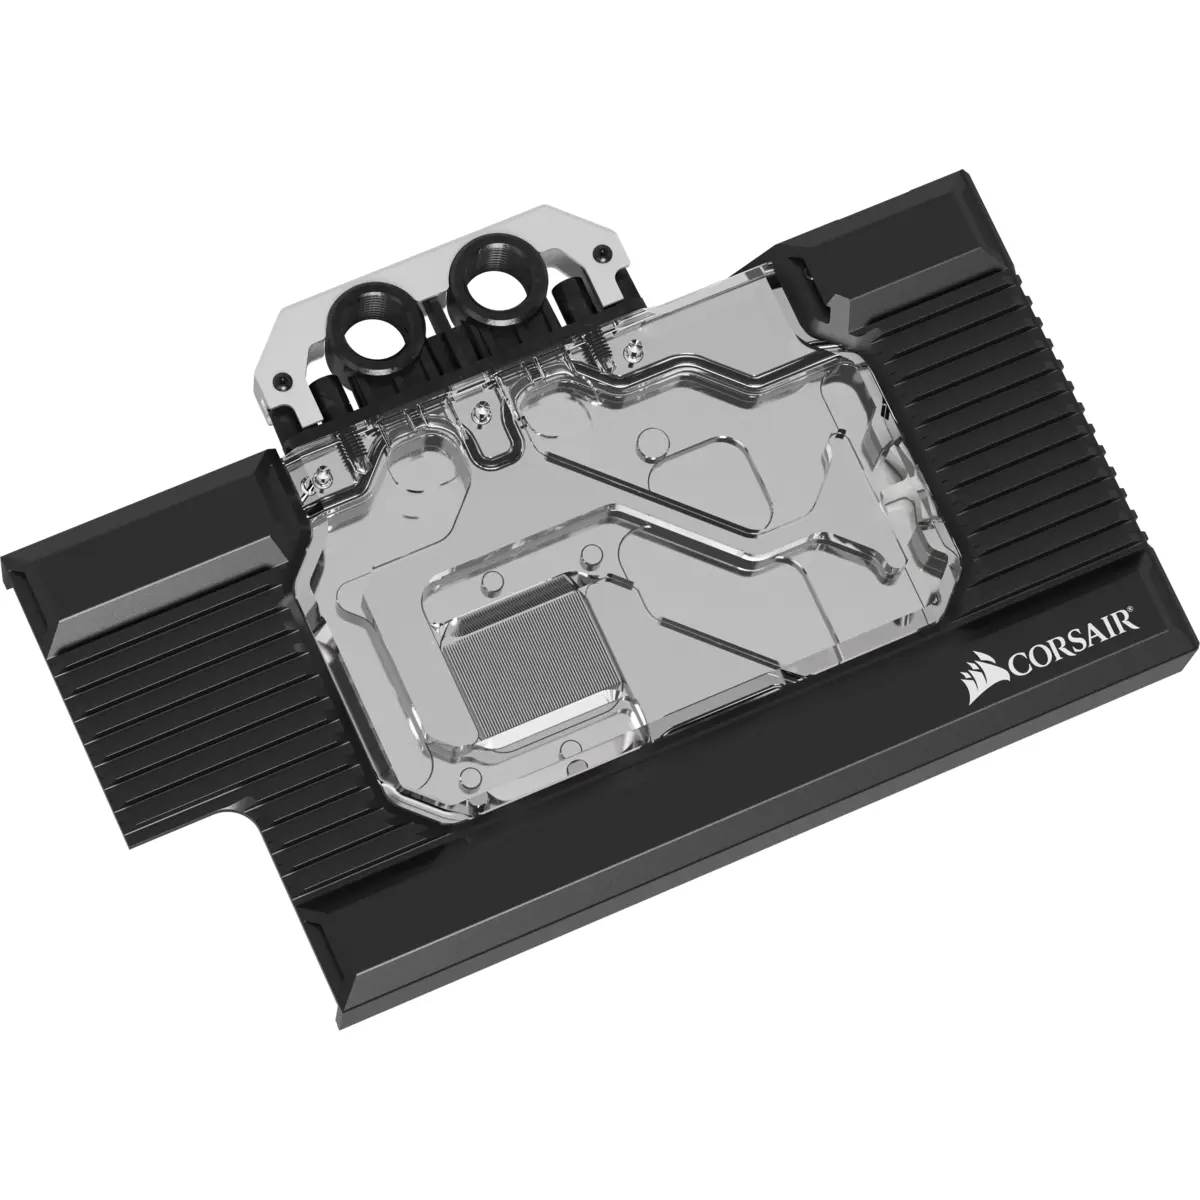 Воден блок за видео карта Corsair Hydro XG7 RGB за RTX 2070 Series Founders Edition - image 1